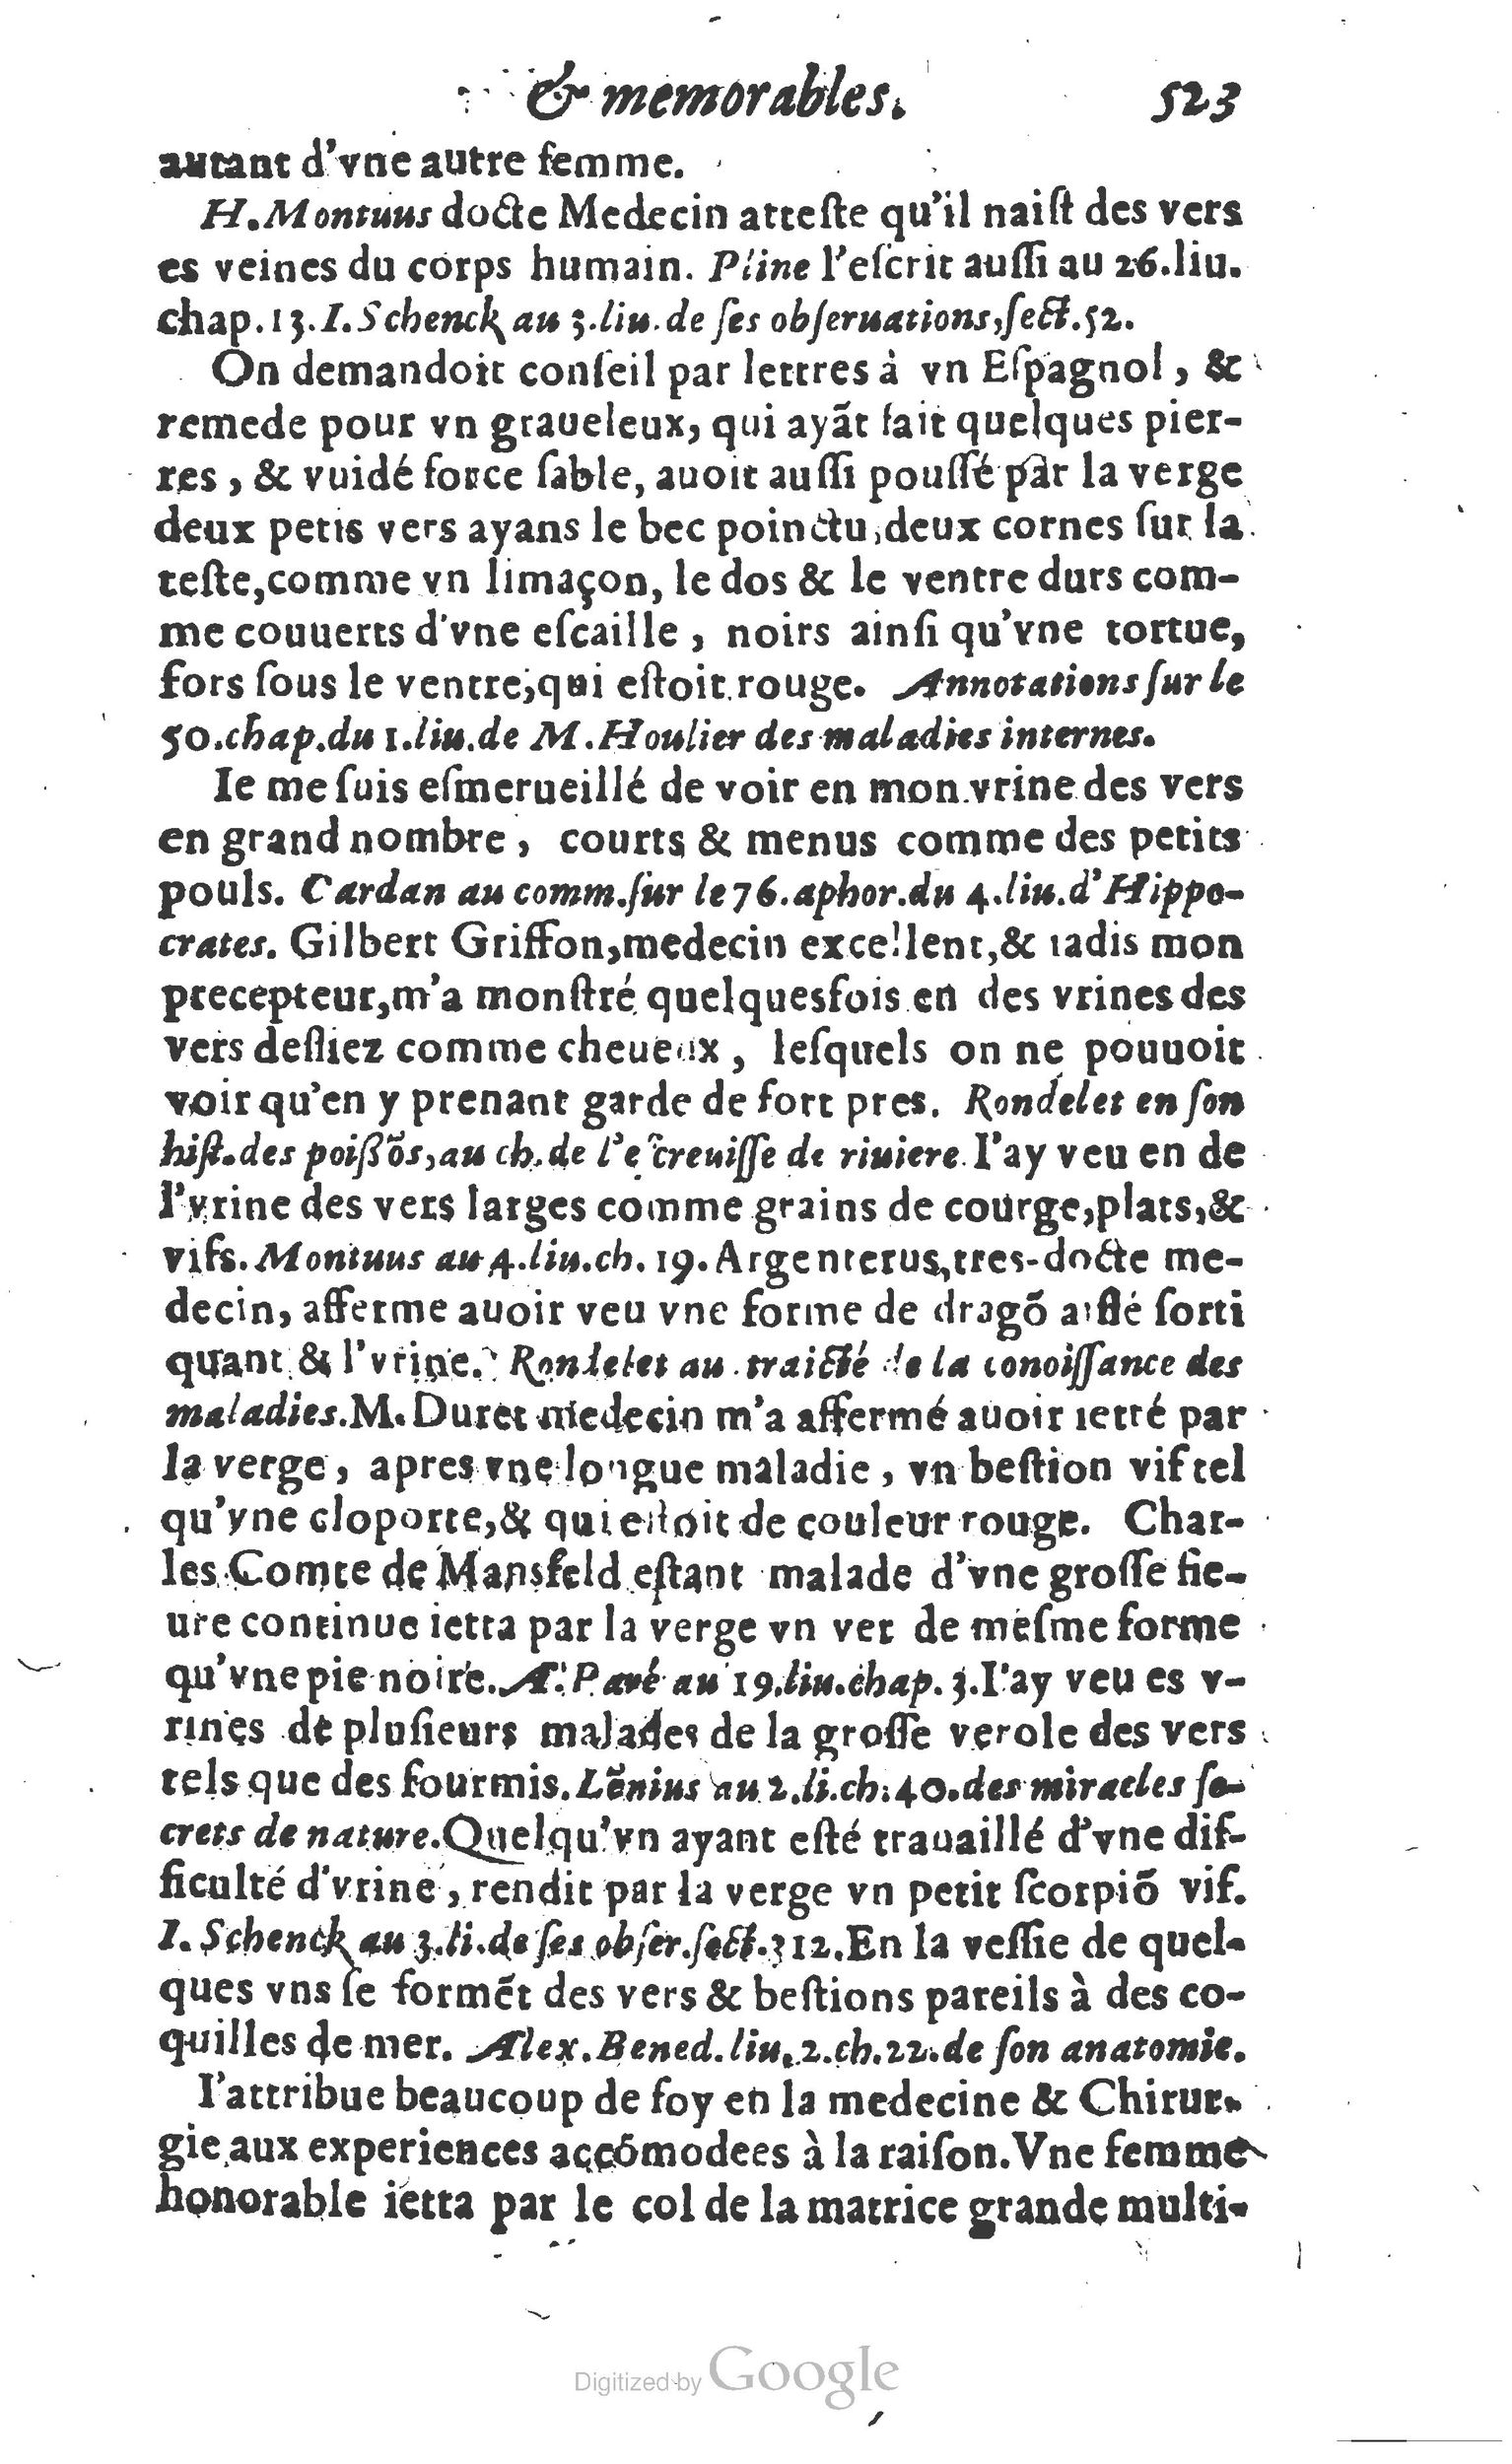 1610 Trésor d’histoires admirables et mémorables de nostre temps Marceau Princeton_Page_0544.jpg